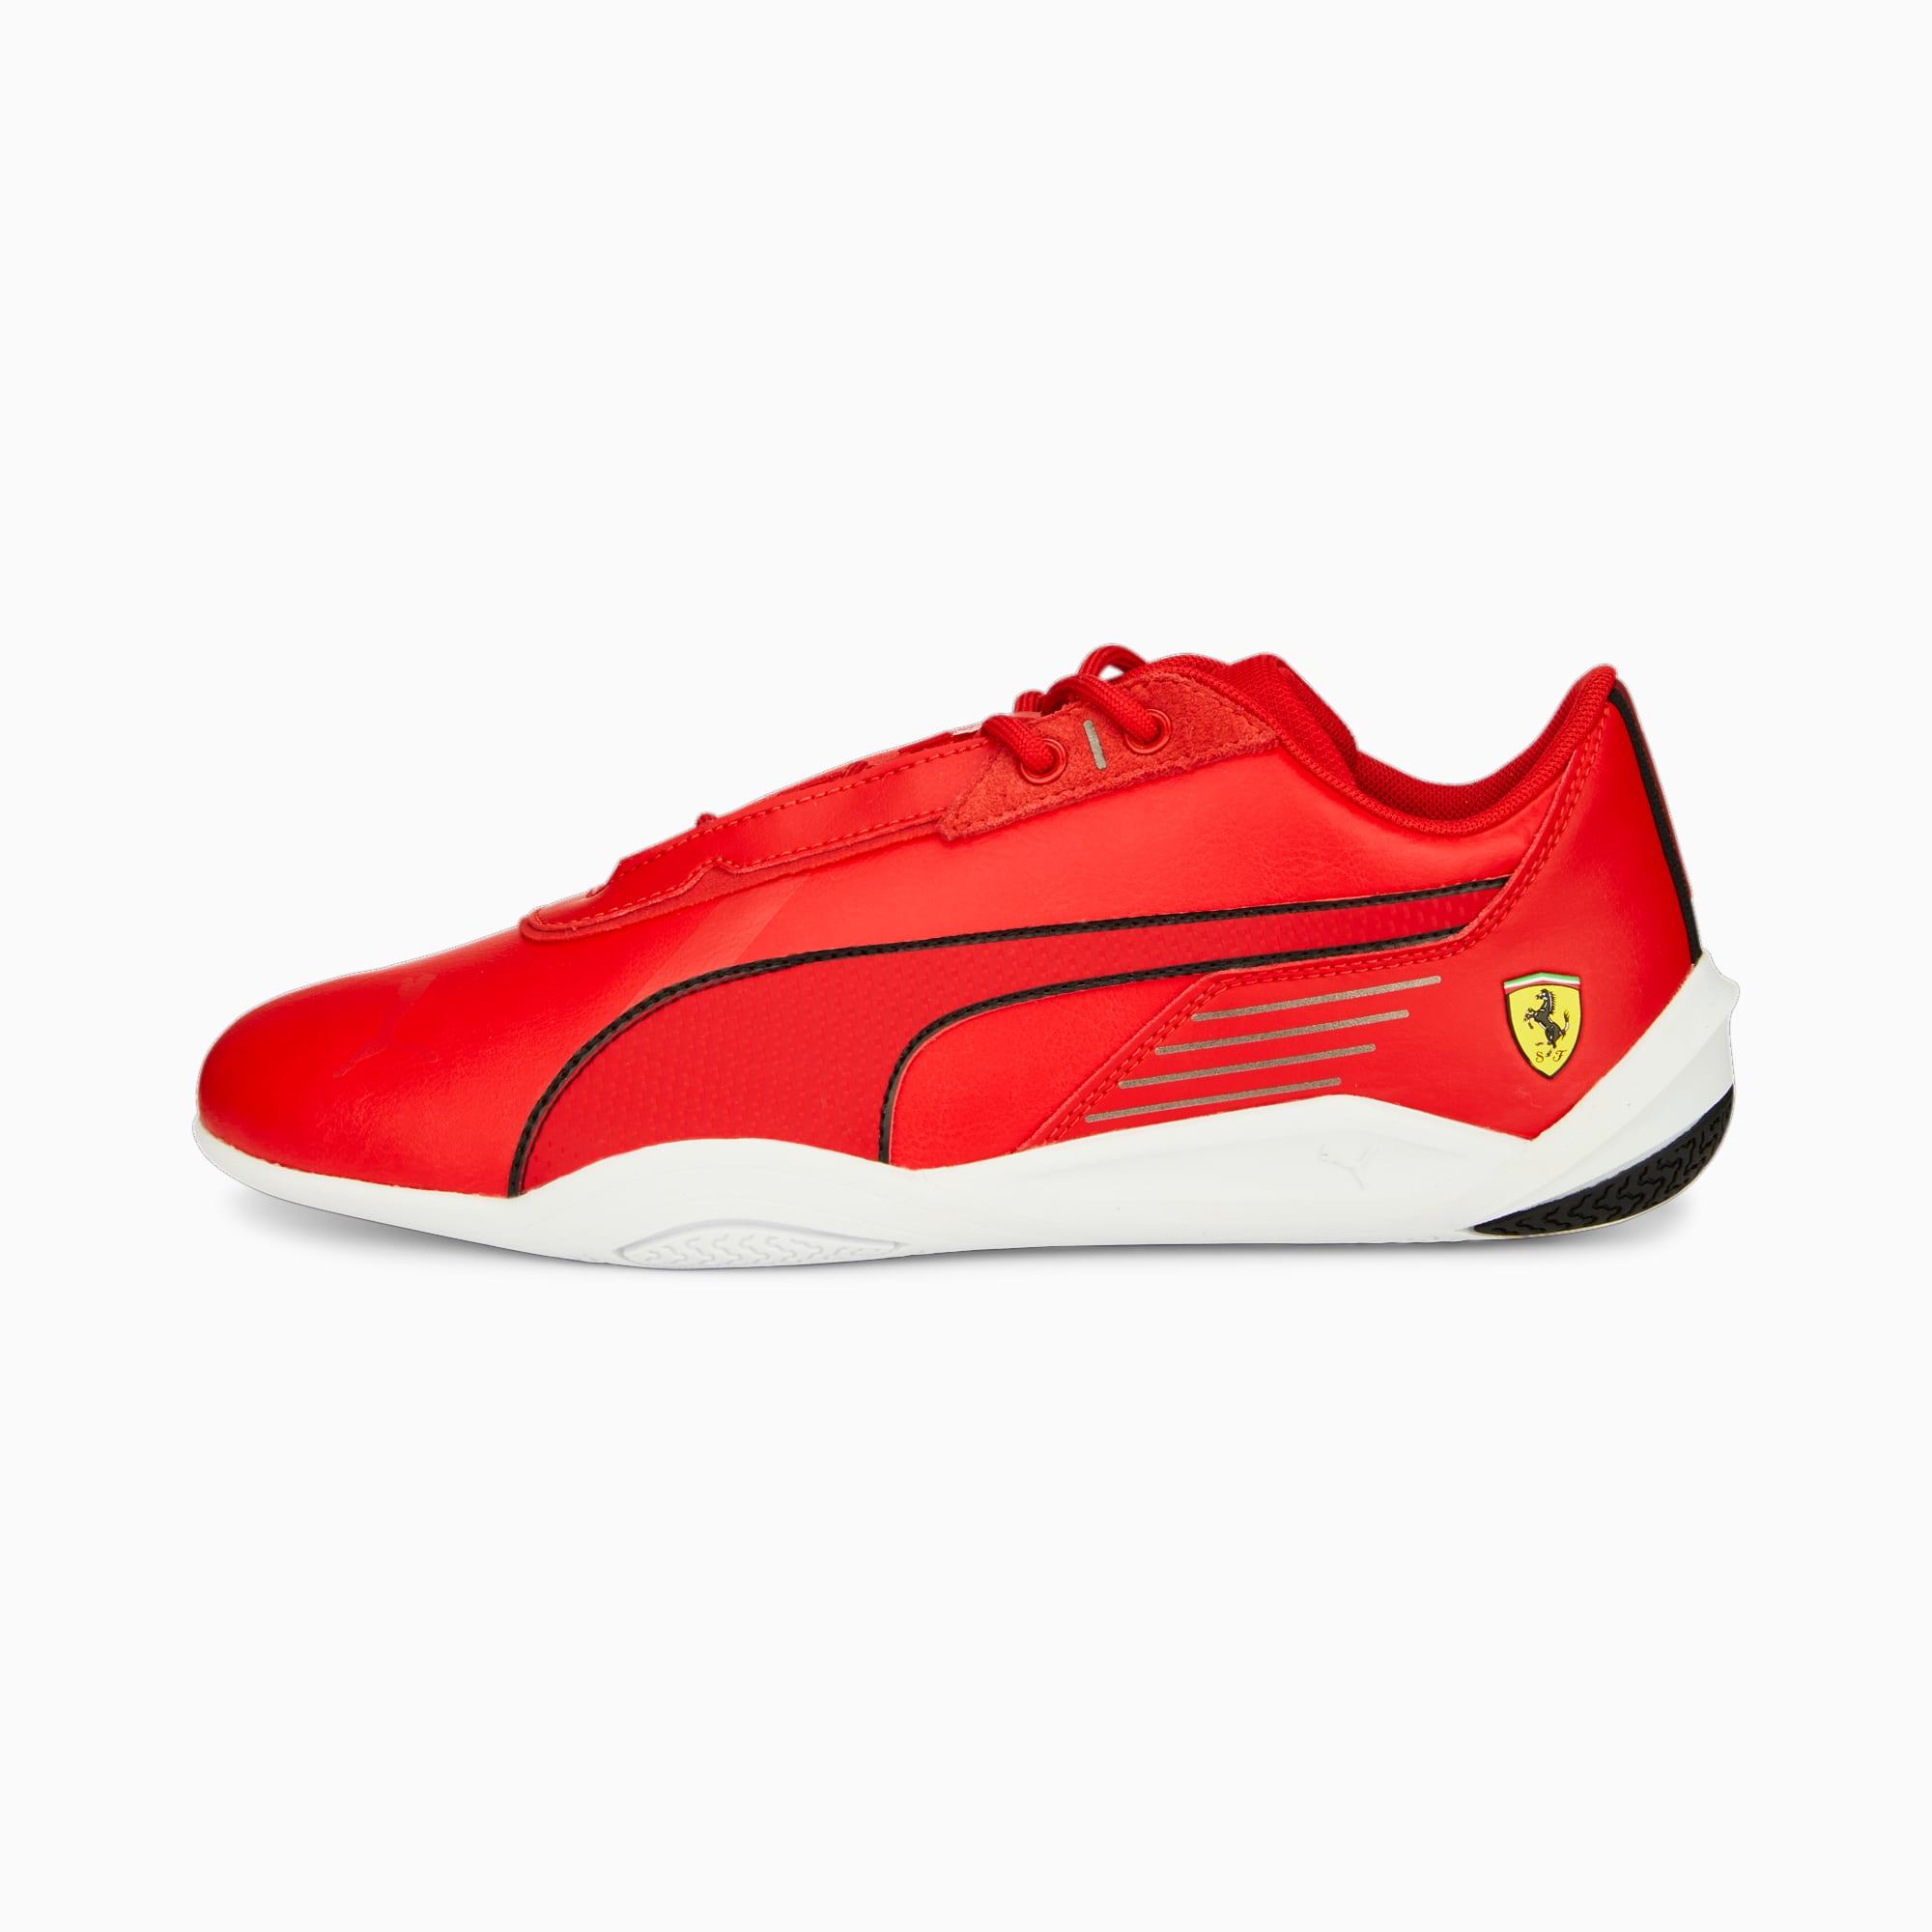 PUMA Scuderia Ferrari R-cat Machina Motorsport Sneakers in Red | Lyst UK